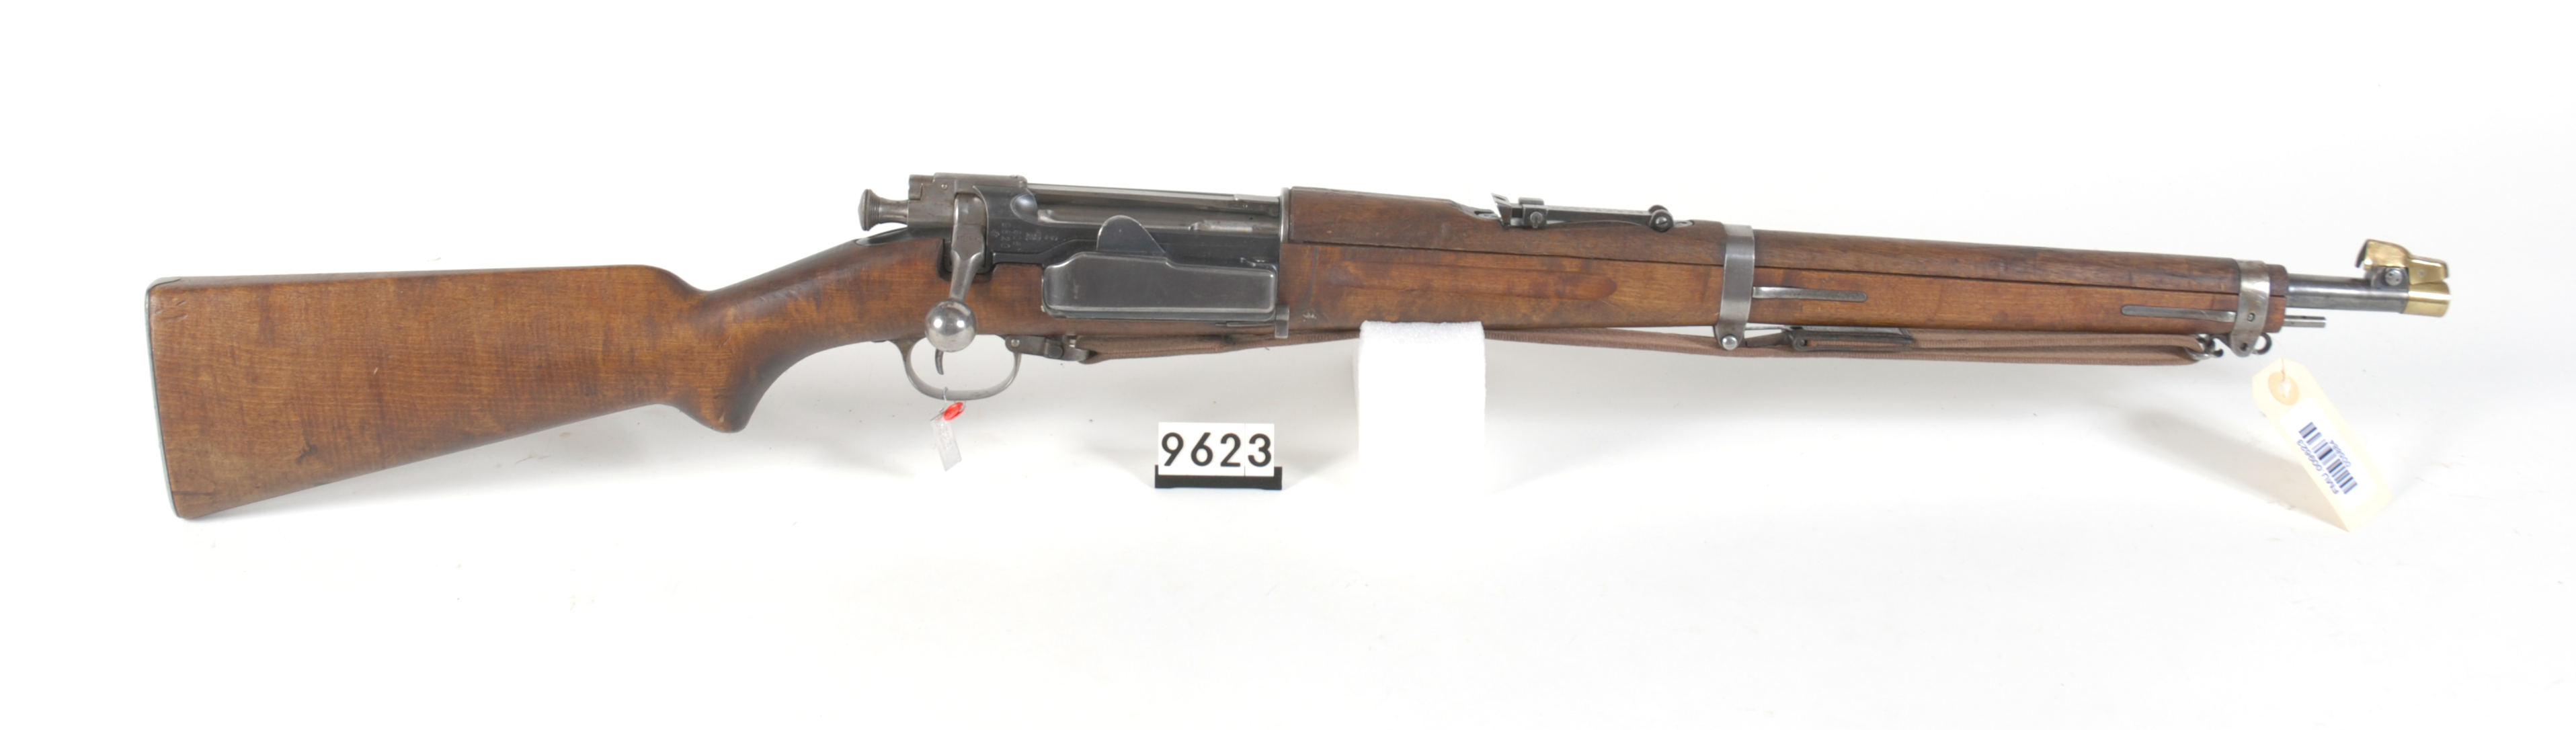 ./guns/rifle/bilder/Rifle-Kongsberg-Krag-M1904-FMU.009623.jpg